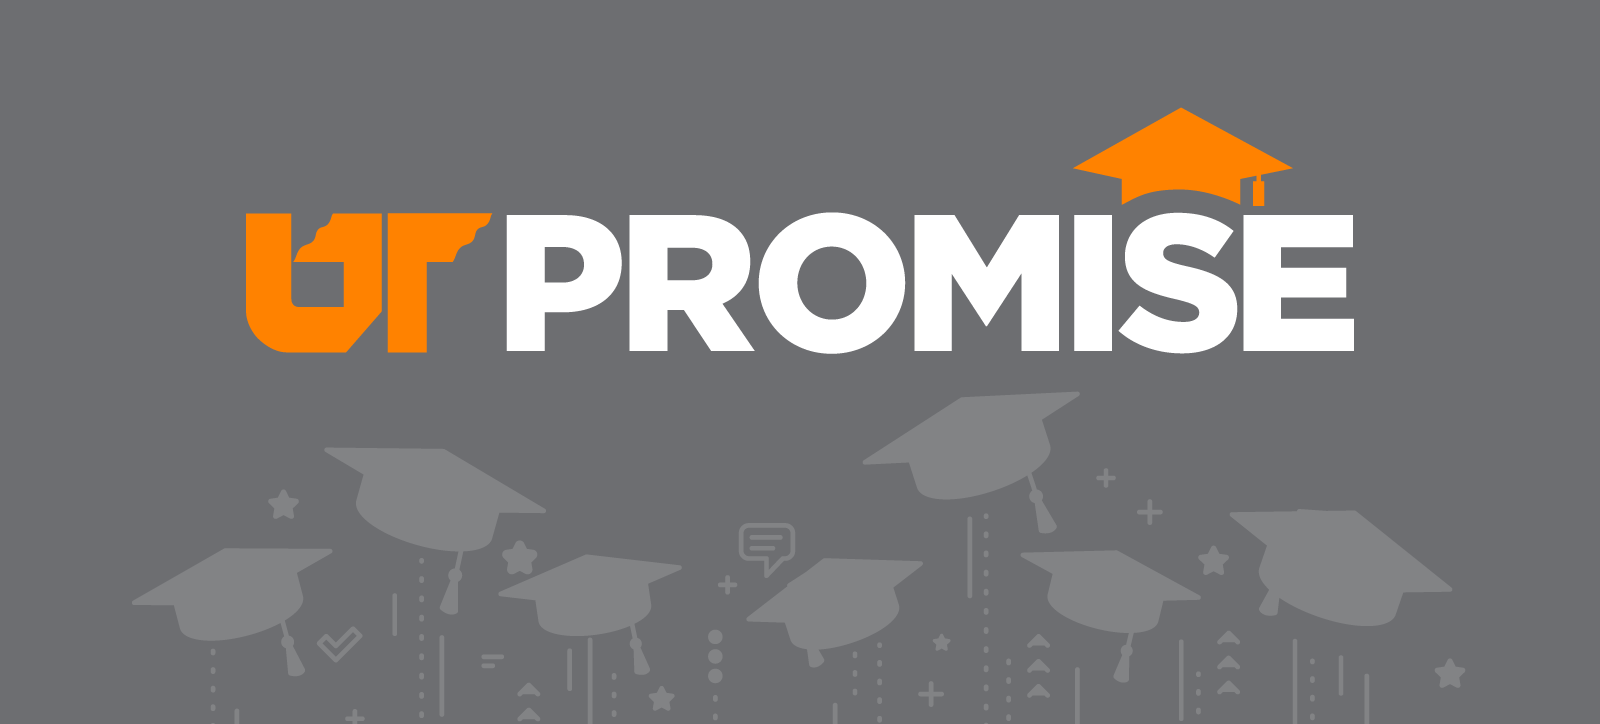 UT Promise logo